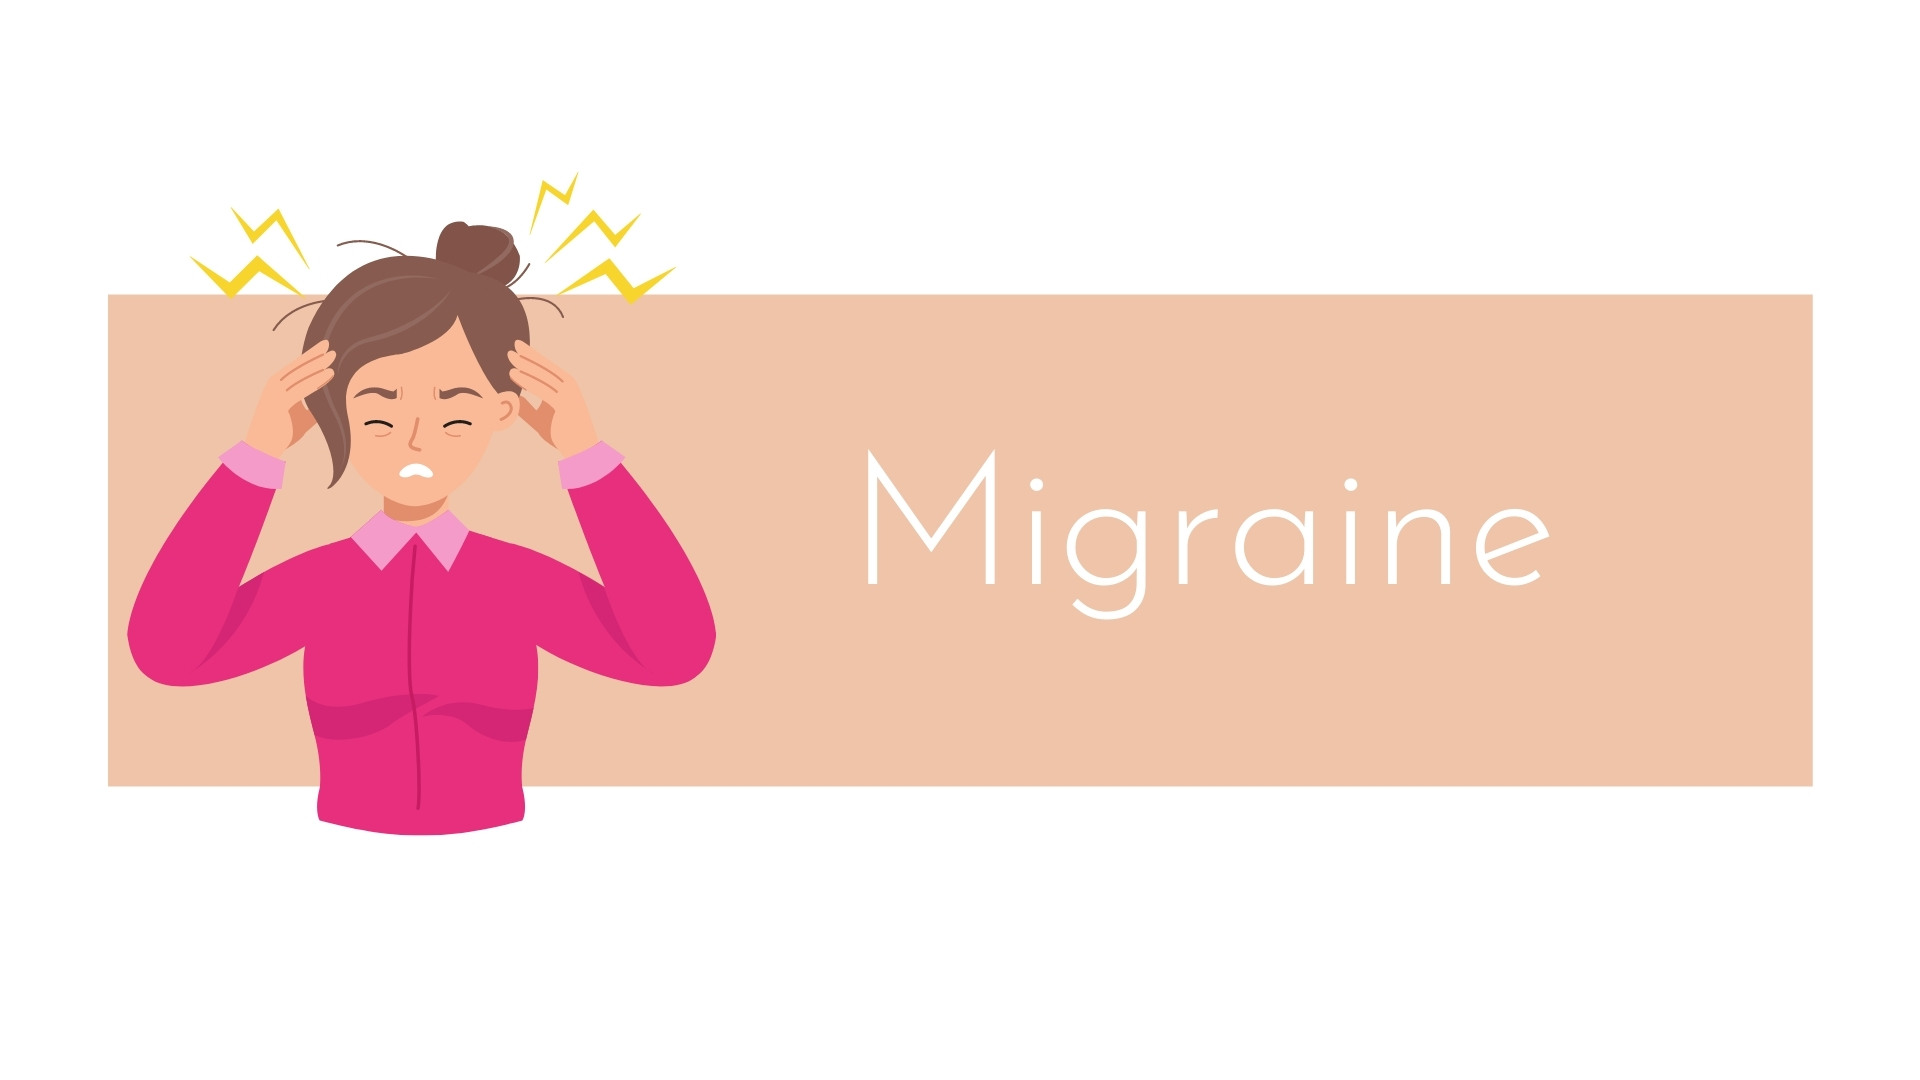 Migraine luxopuncture